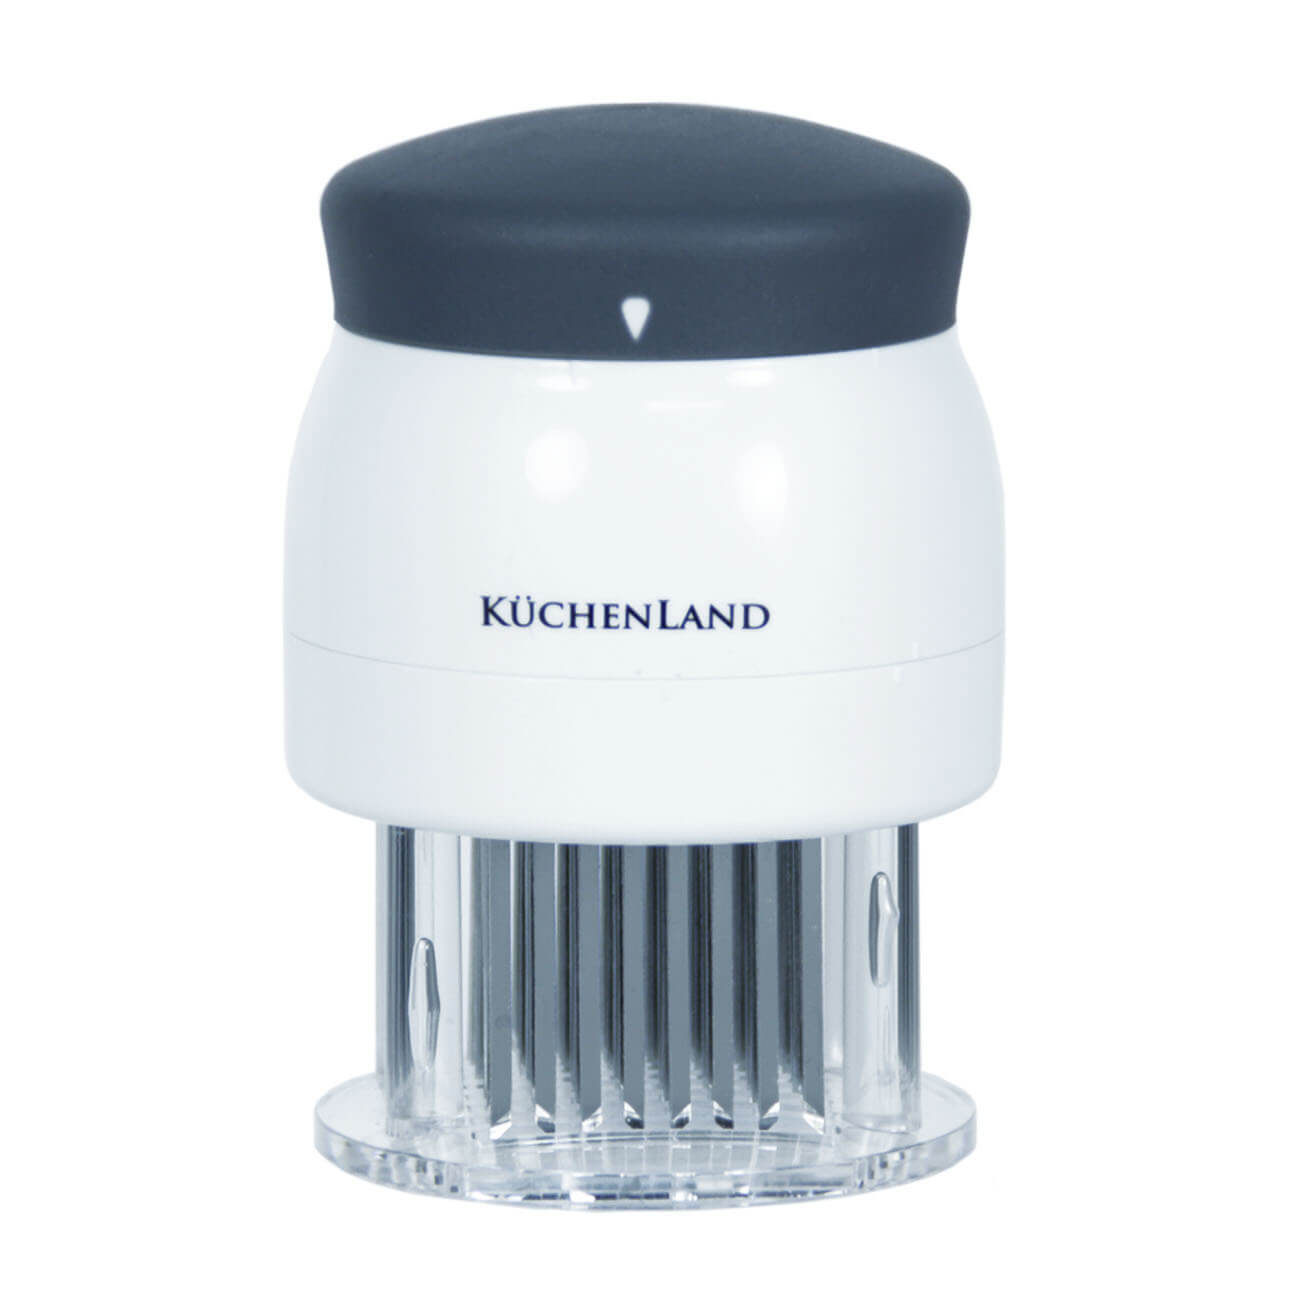 Kuchenland Тендерайзер, 8х11 см, 72 лезвия, сталь/пластик, белый, Grinding лезвия запасные